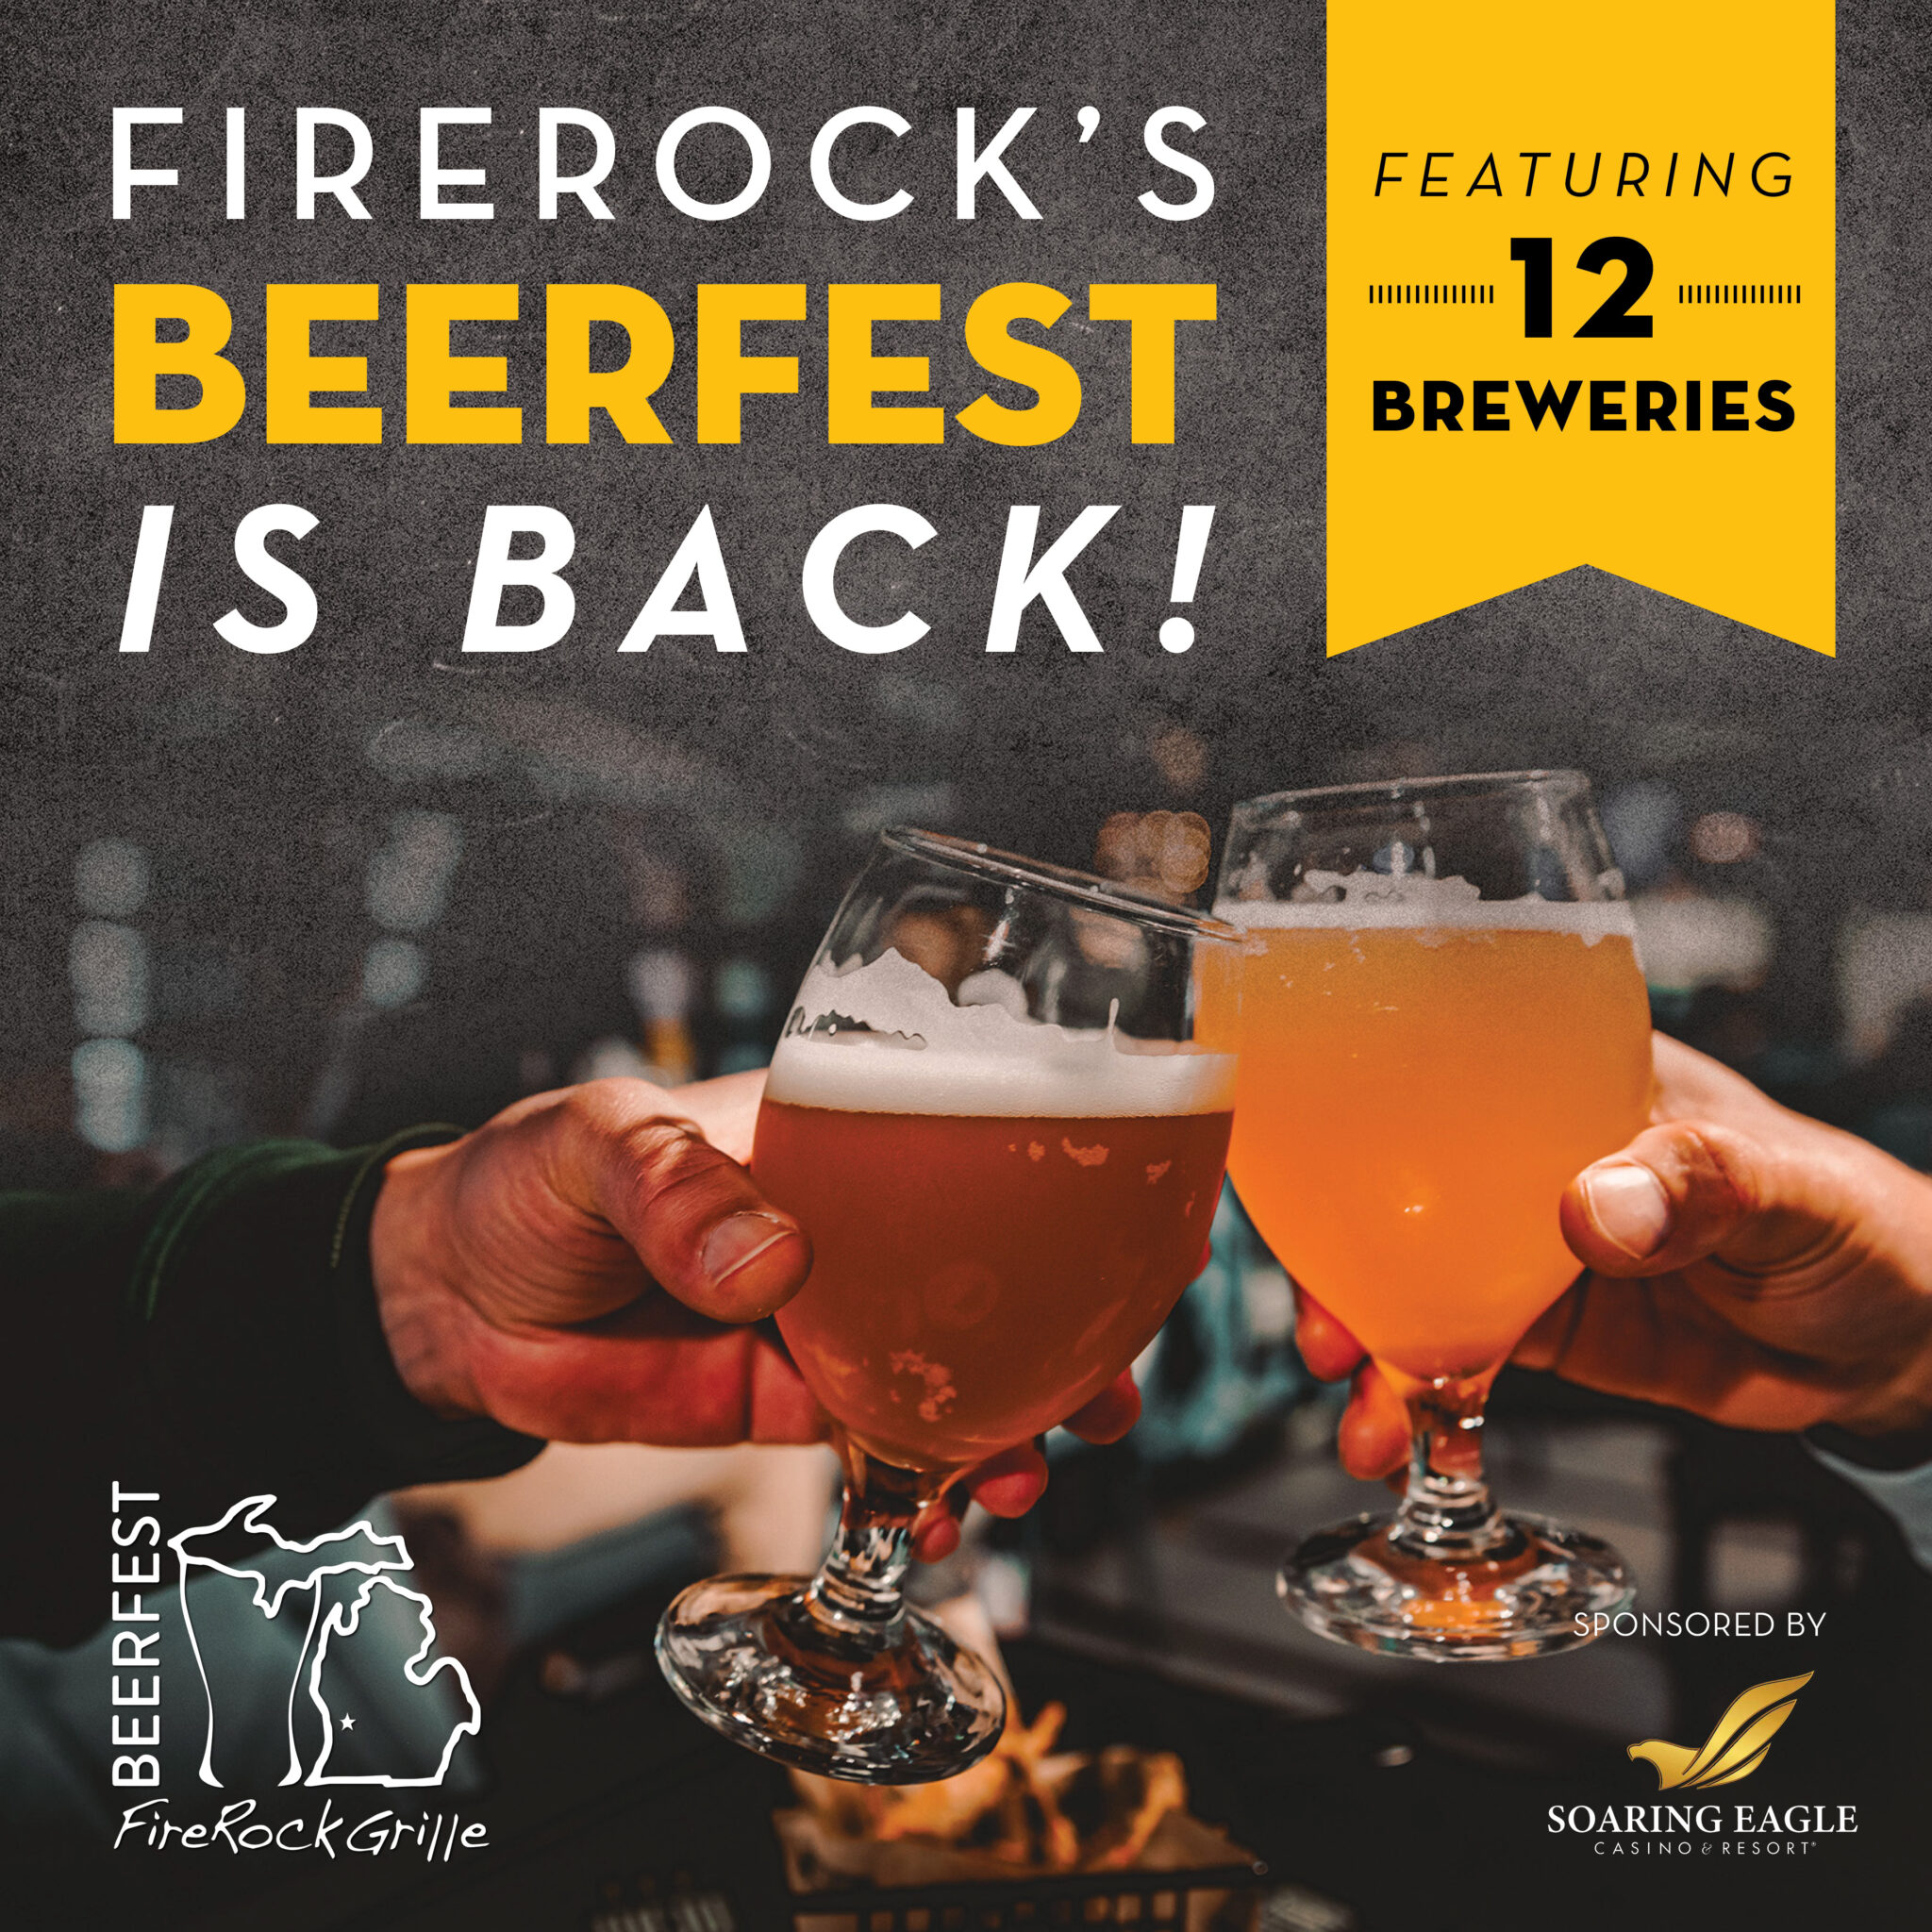 Beerfest at Firerock